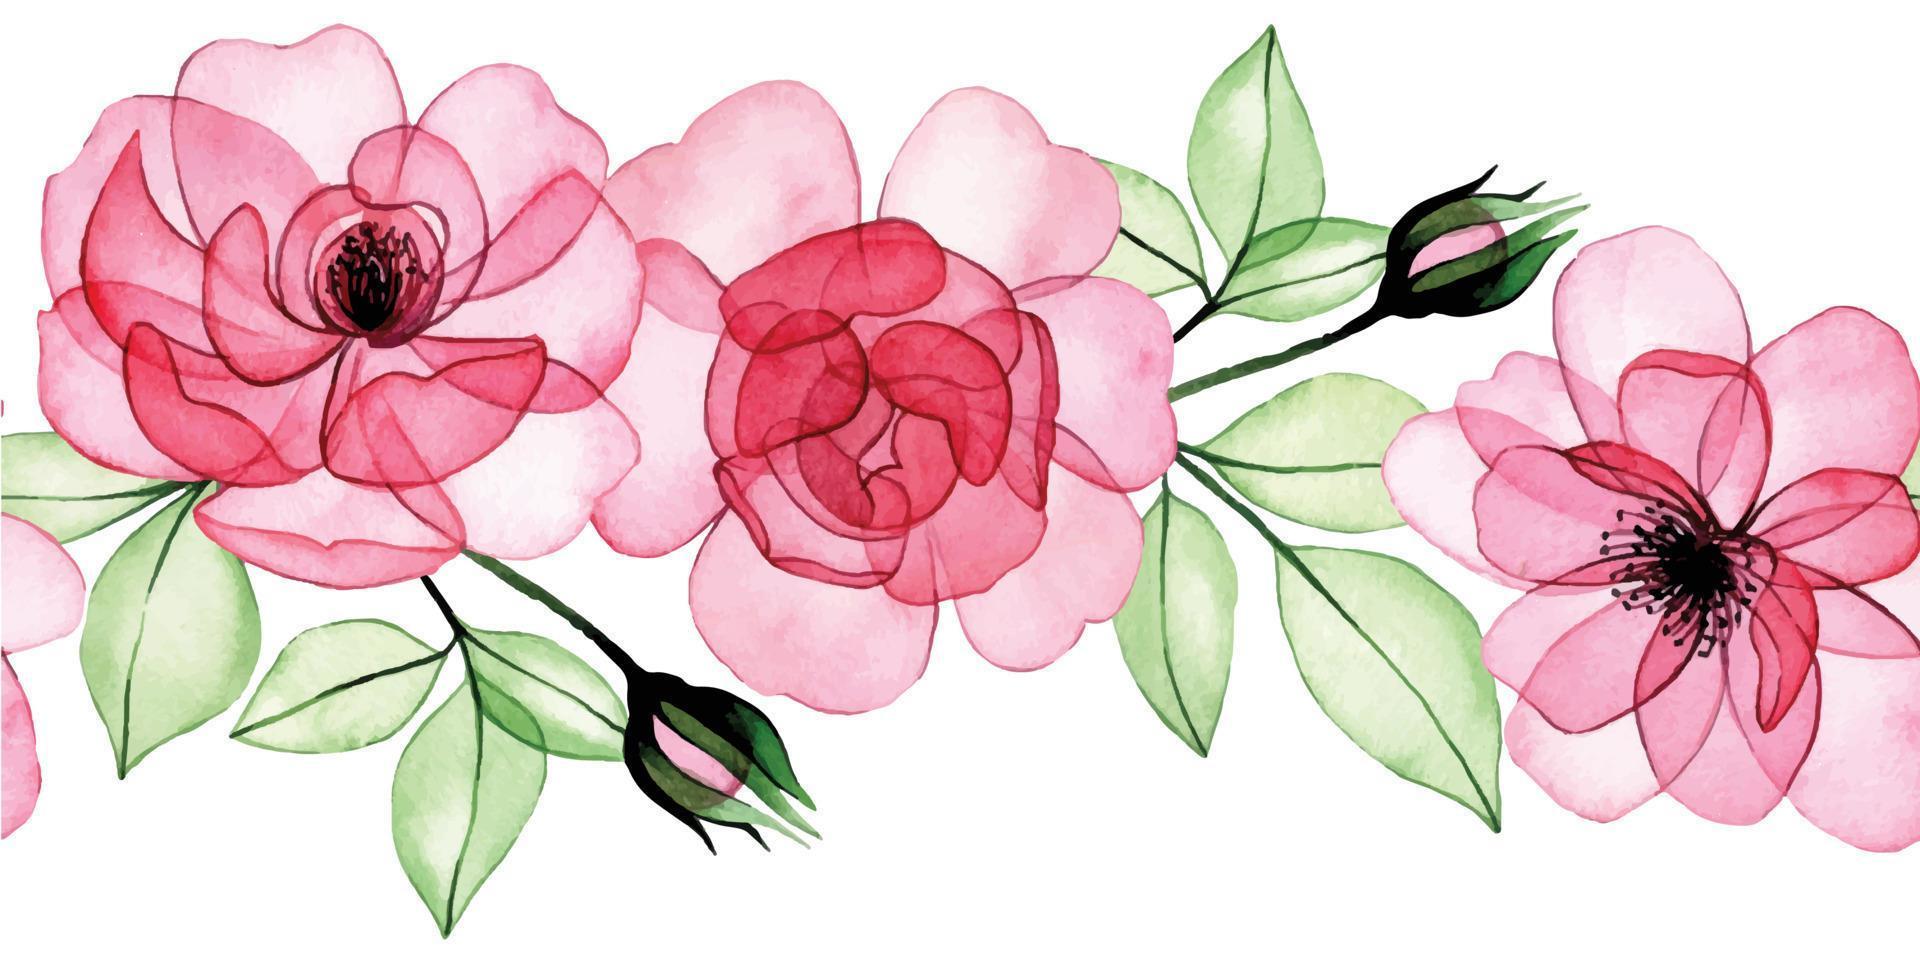 dessin à l'aquarelle. bordure transparente, cadre de fleurs transparentes, roses roses, bourgeons et feuilles. radiographie vecteur